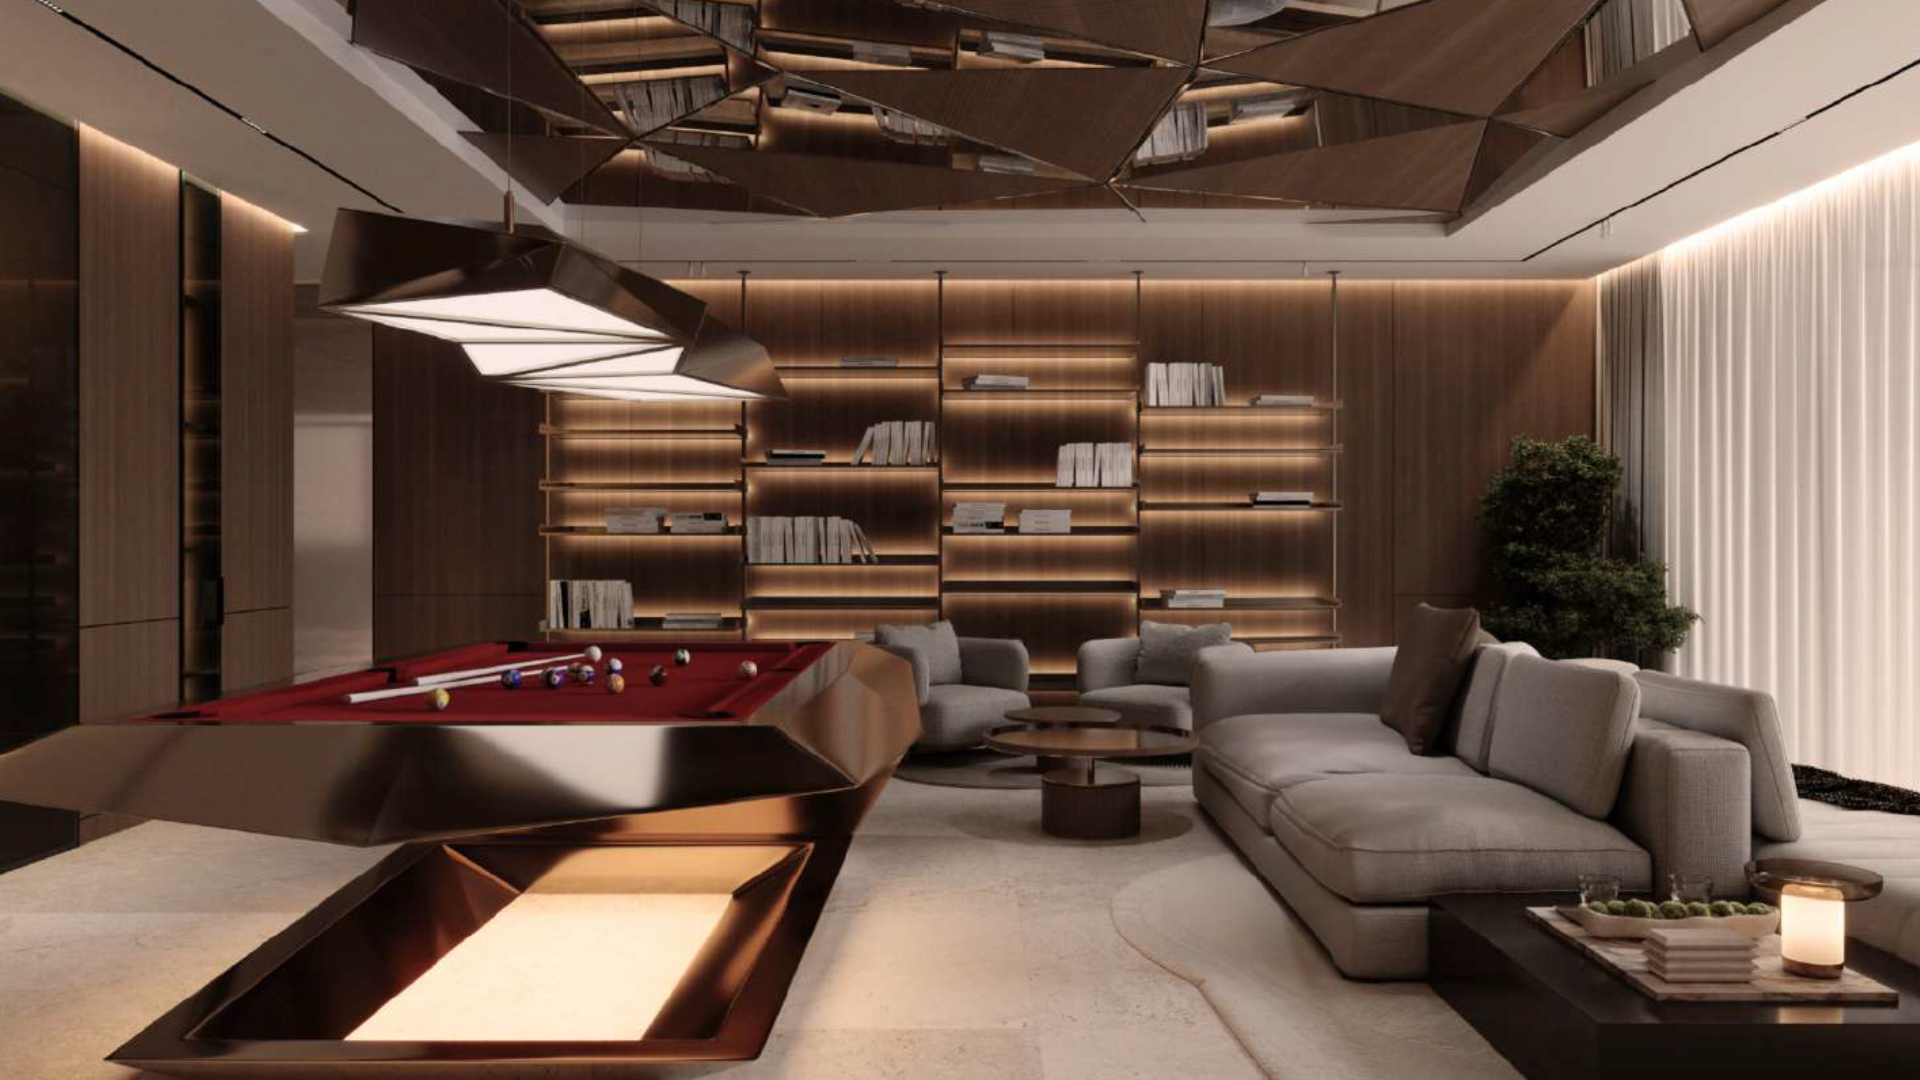 Un salon moderne dans une luxueuse villa à Dubaï comprend une élégante table de billard en feutre rouge surmontée d'un luminaire géométrique. La pièce dispose de sièges gris confortables, d'un mur avec des étagères éclairées et d'une grande plante. Le design contemporain comprend des boiseries et un plafond réfléchissant.